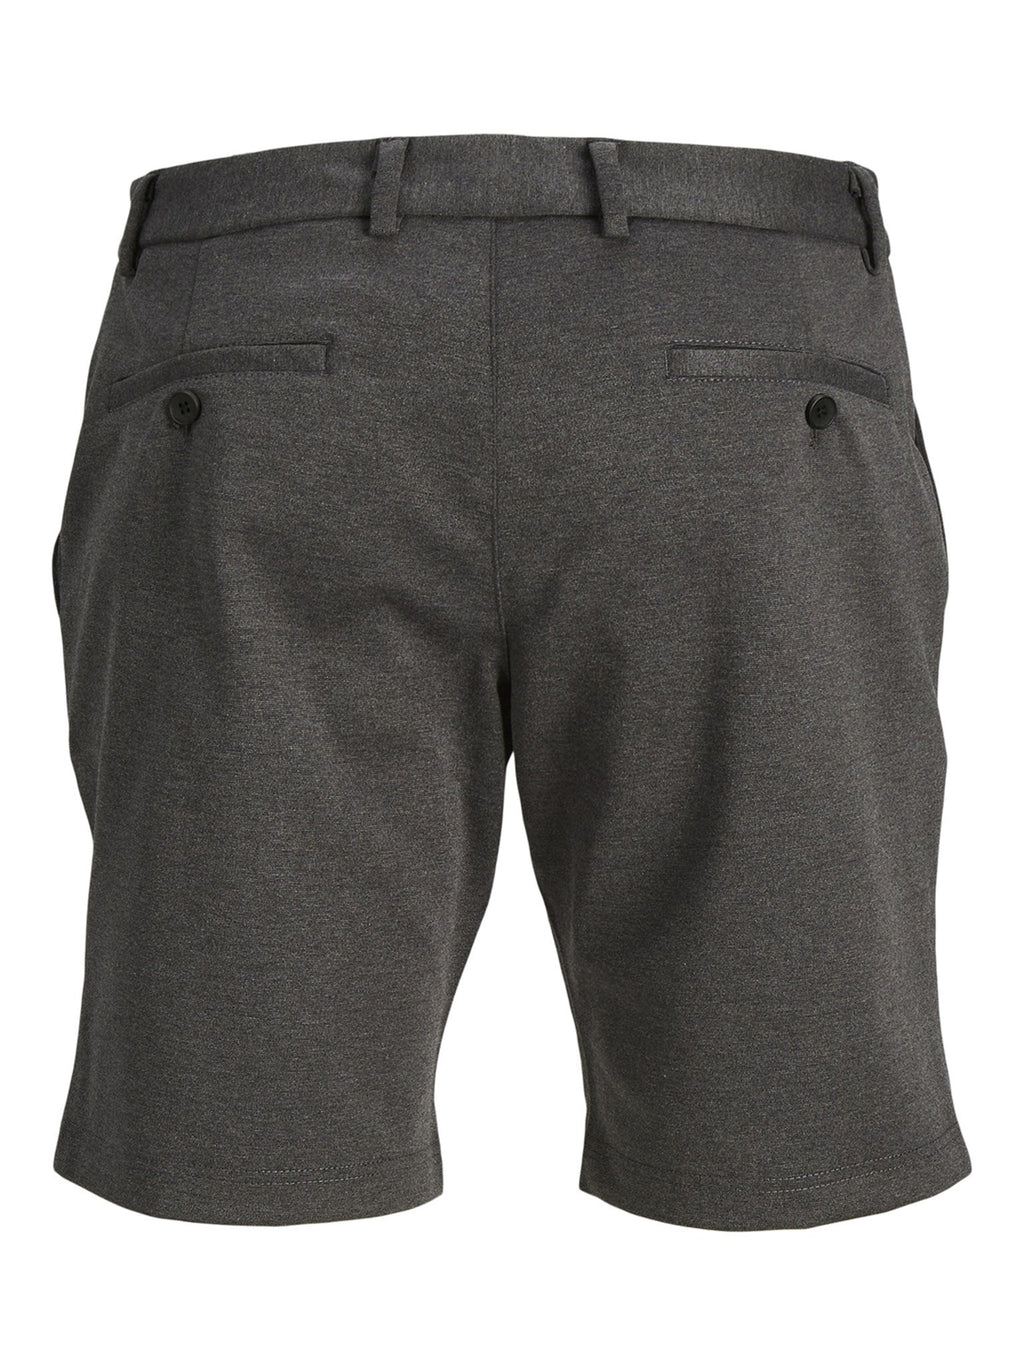 原始性能短裤 - 深灰色